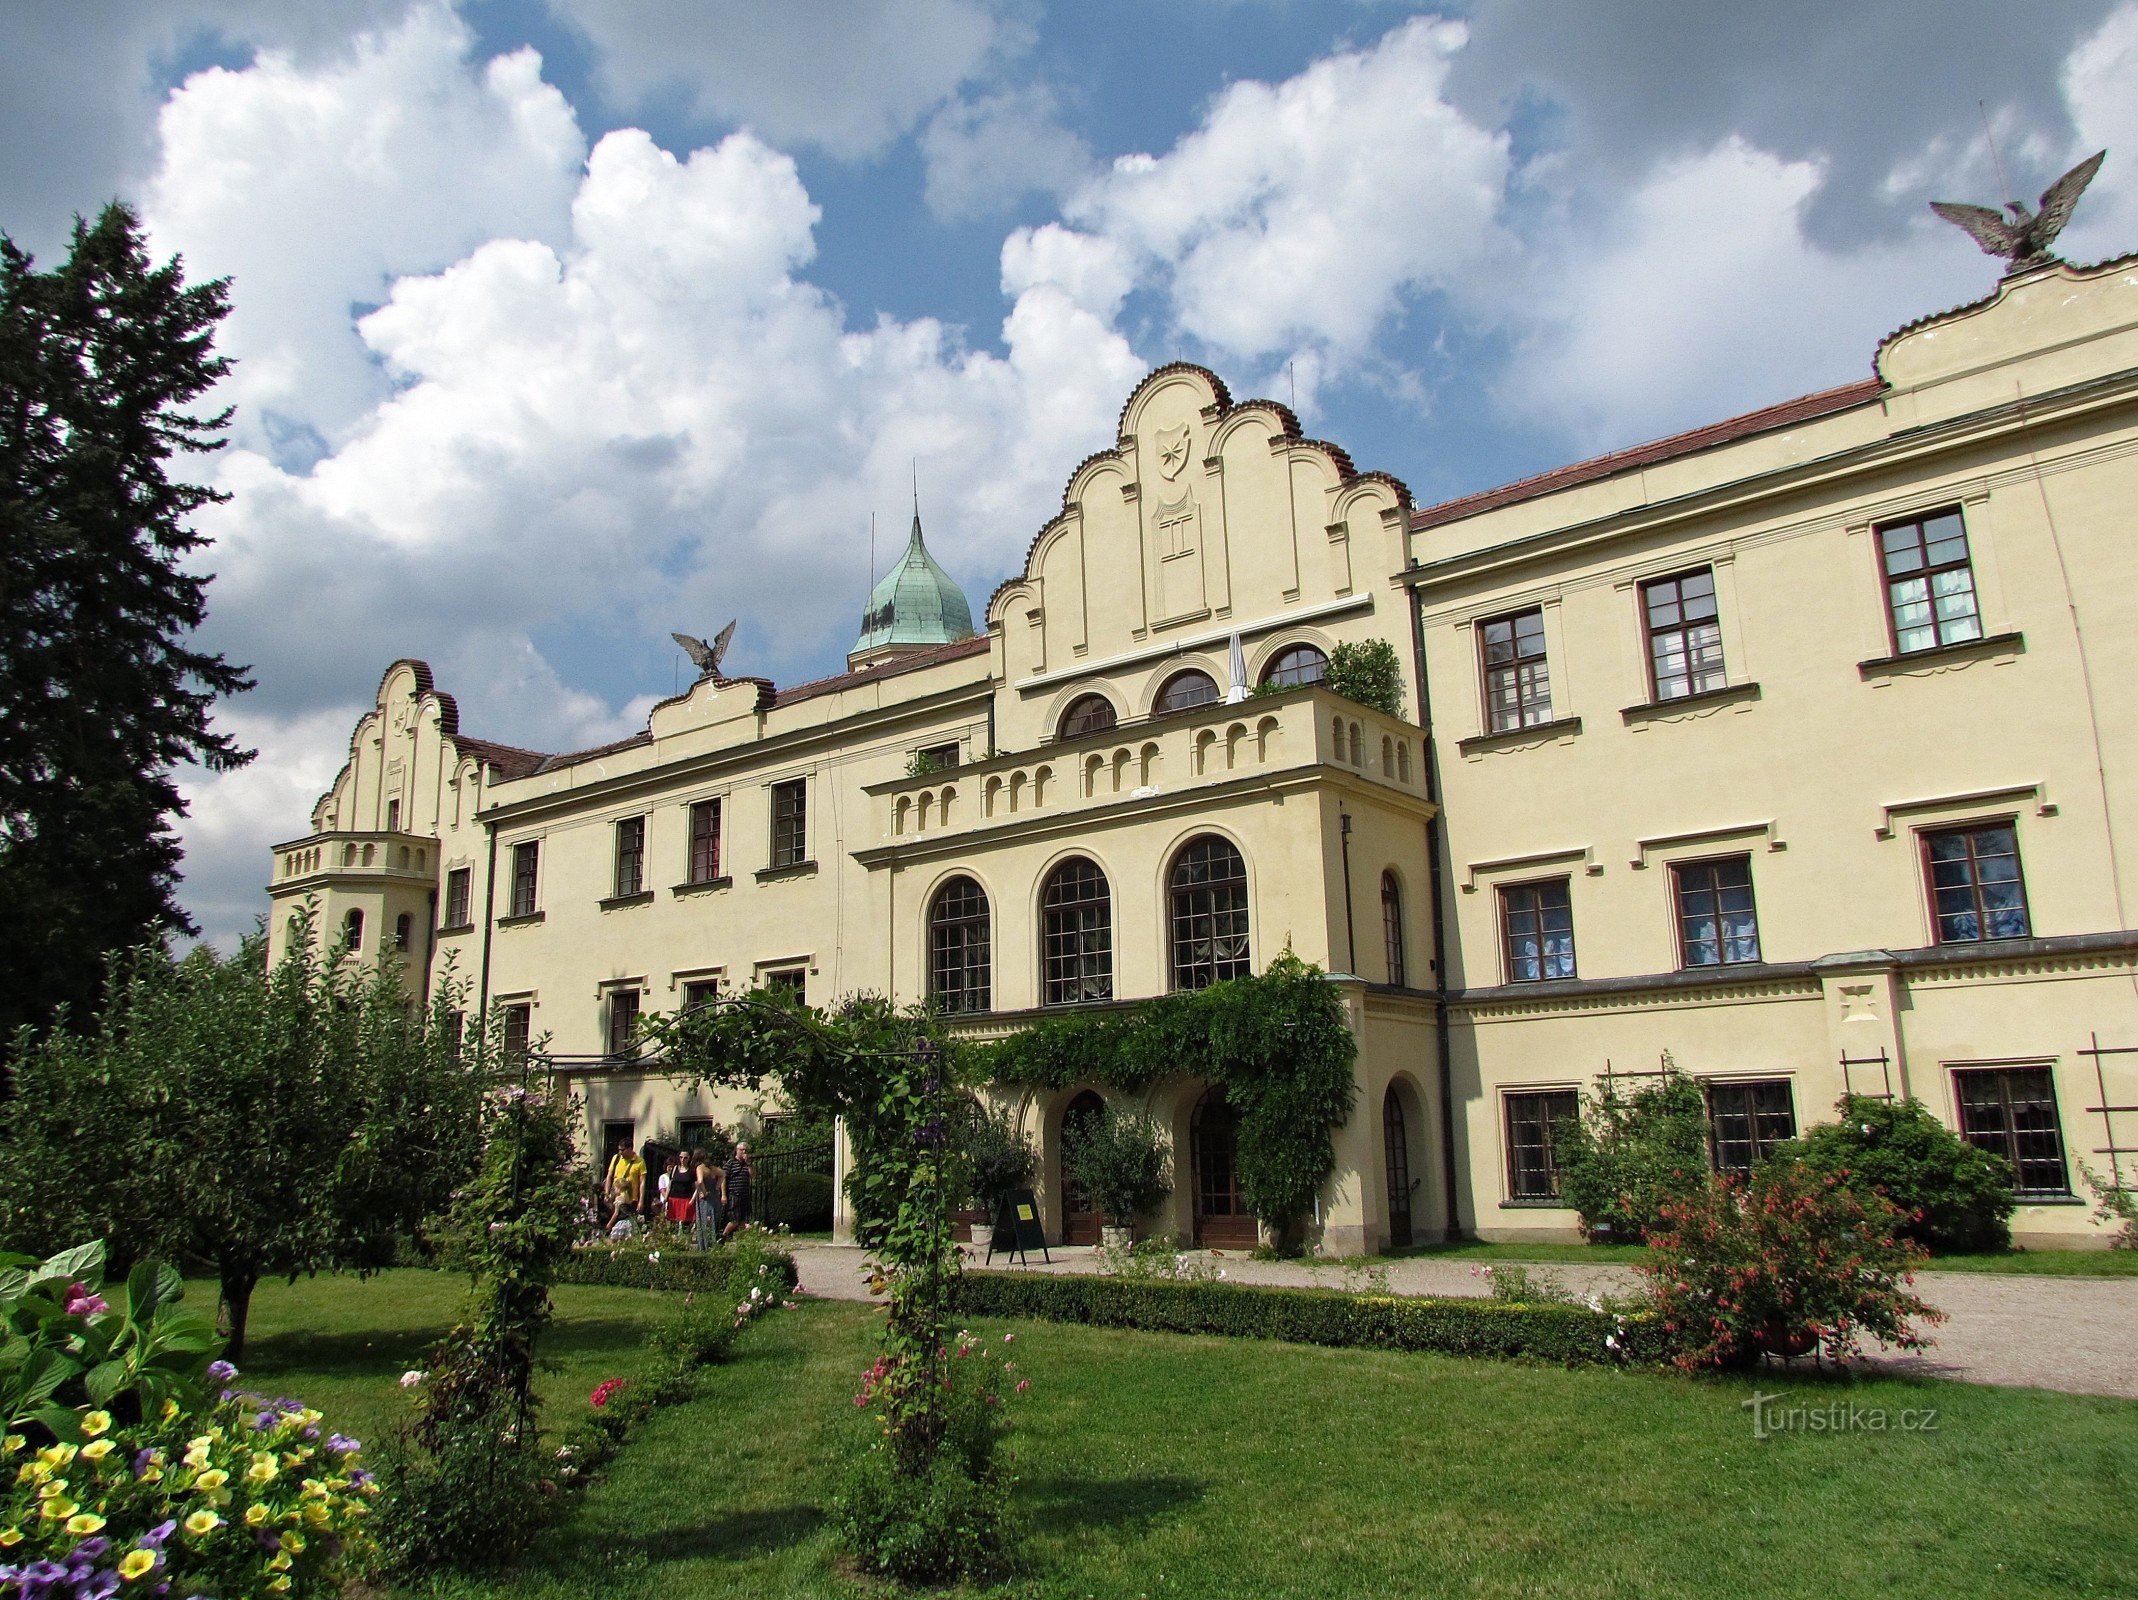 KRÁLÍKY 2014 - 2. Návštěva zámku Častolovice a města Letohradu